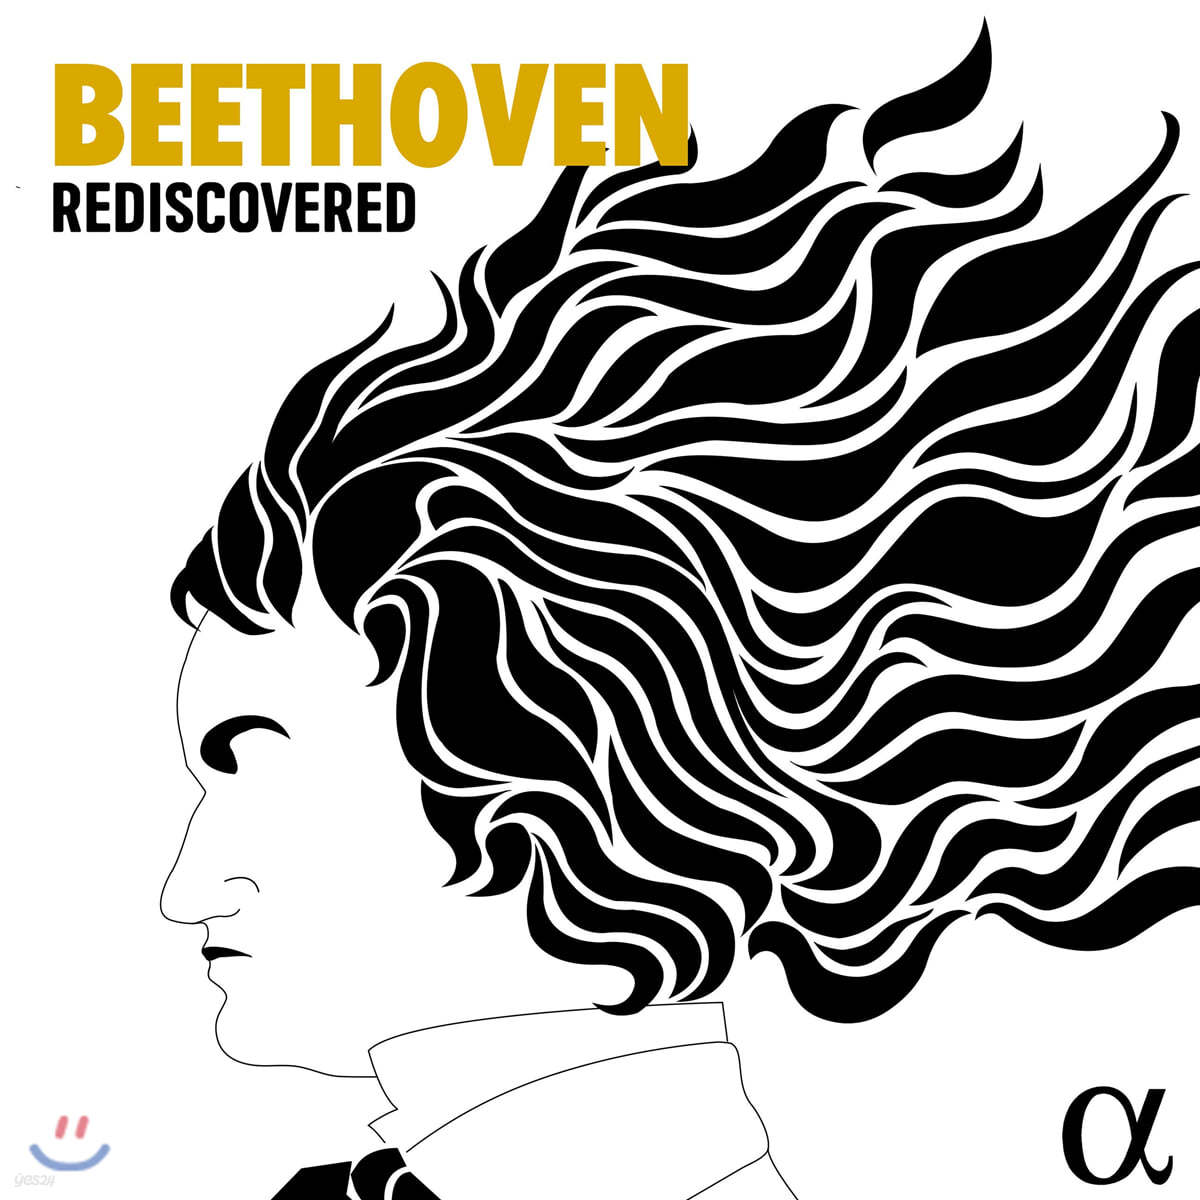 알파 레이블 베토벤 명반 모음집 (Beethoven Rediscovered)